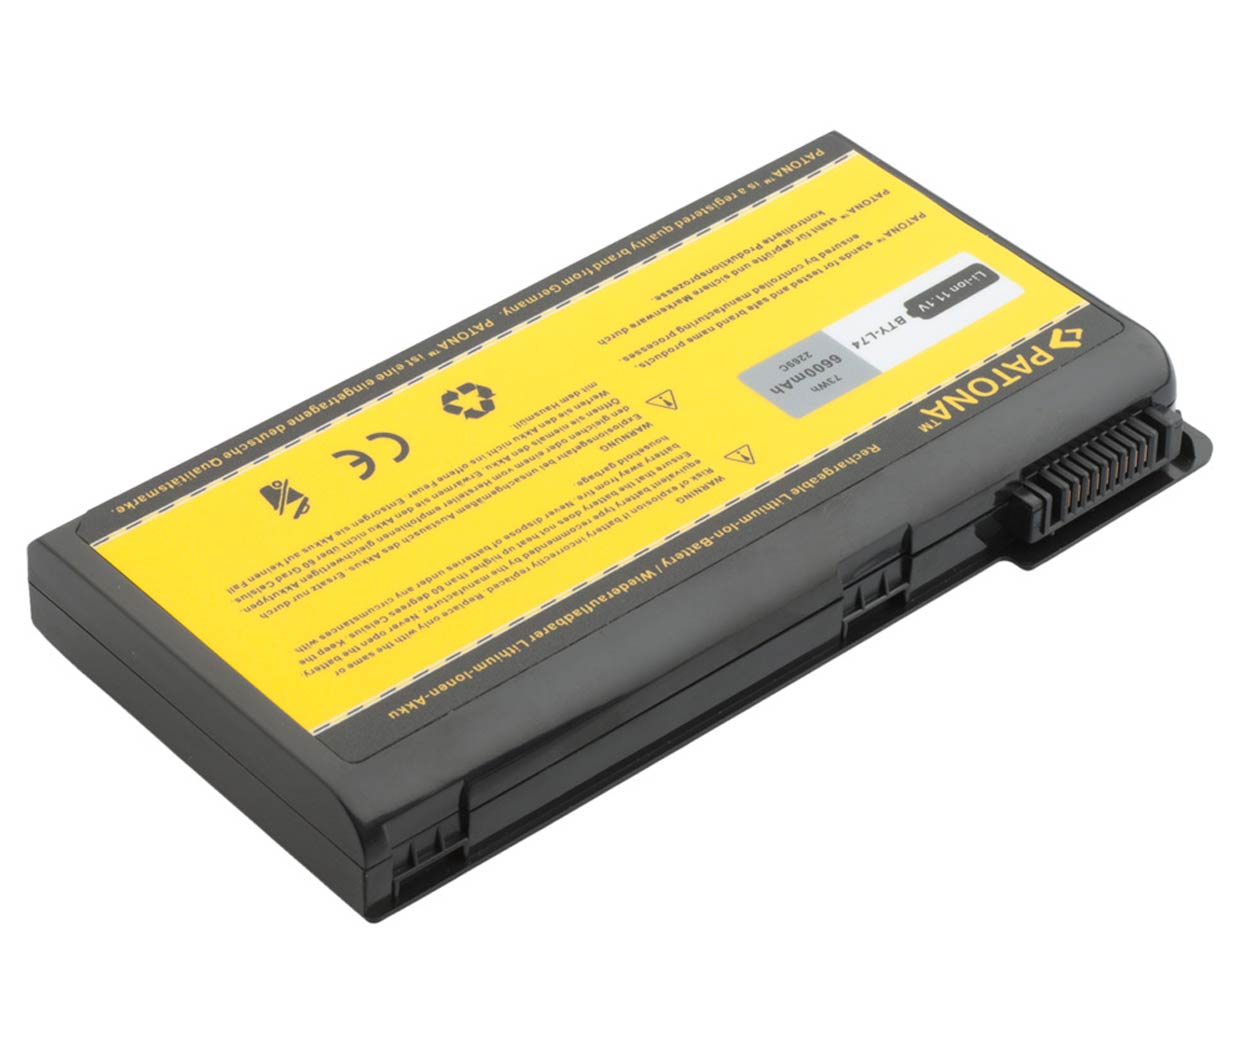 Baterija za MSI BTY-L74 BTY-L75 A6200 CR600 CR610 CR620 CX600,.. 6600mAh